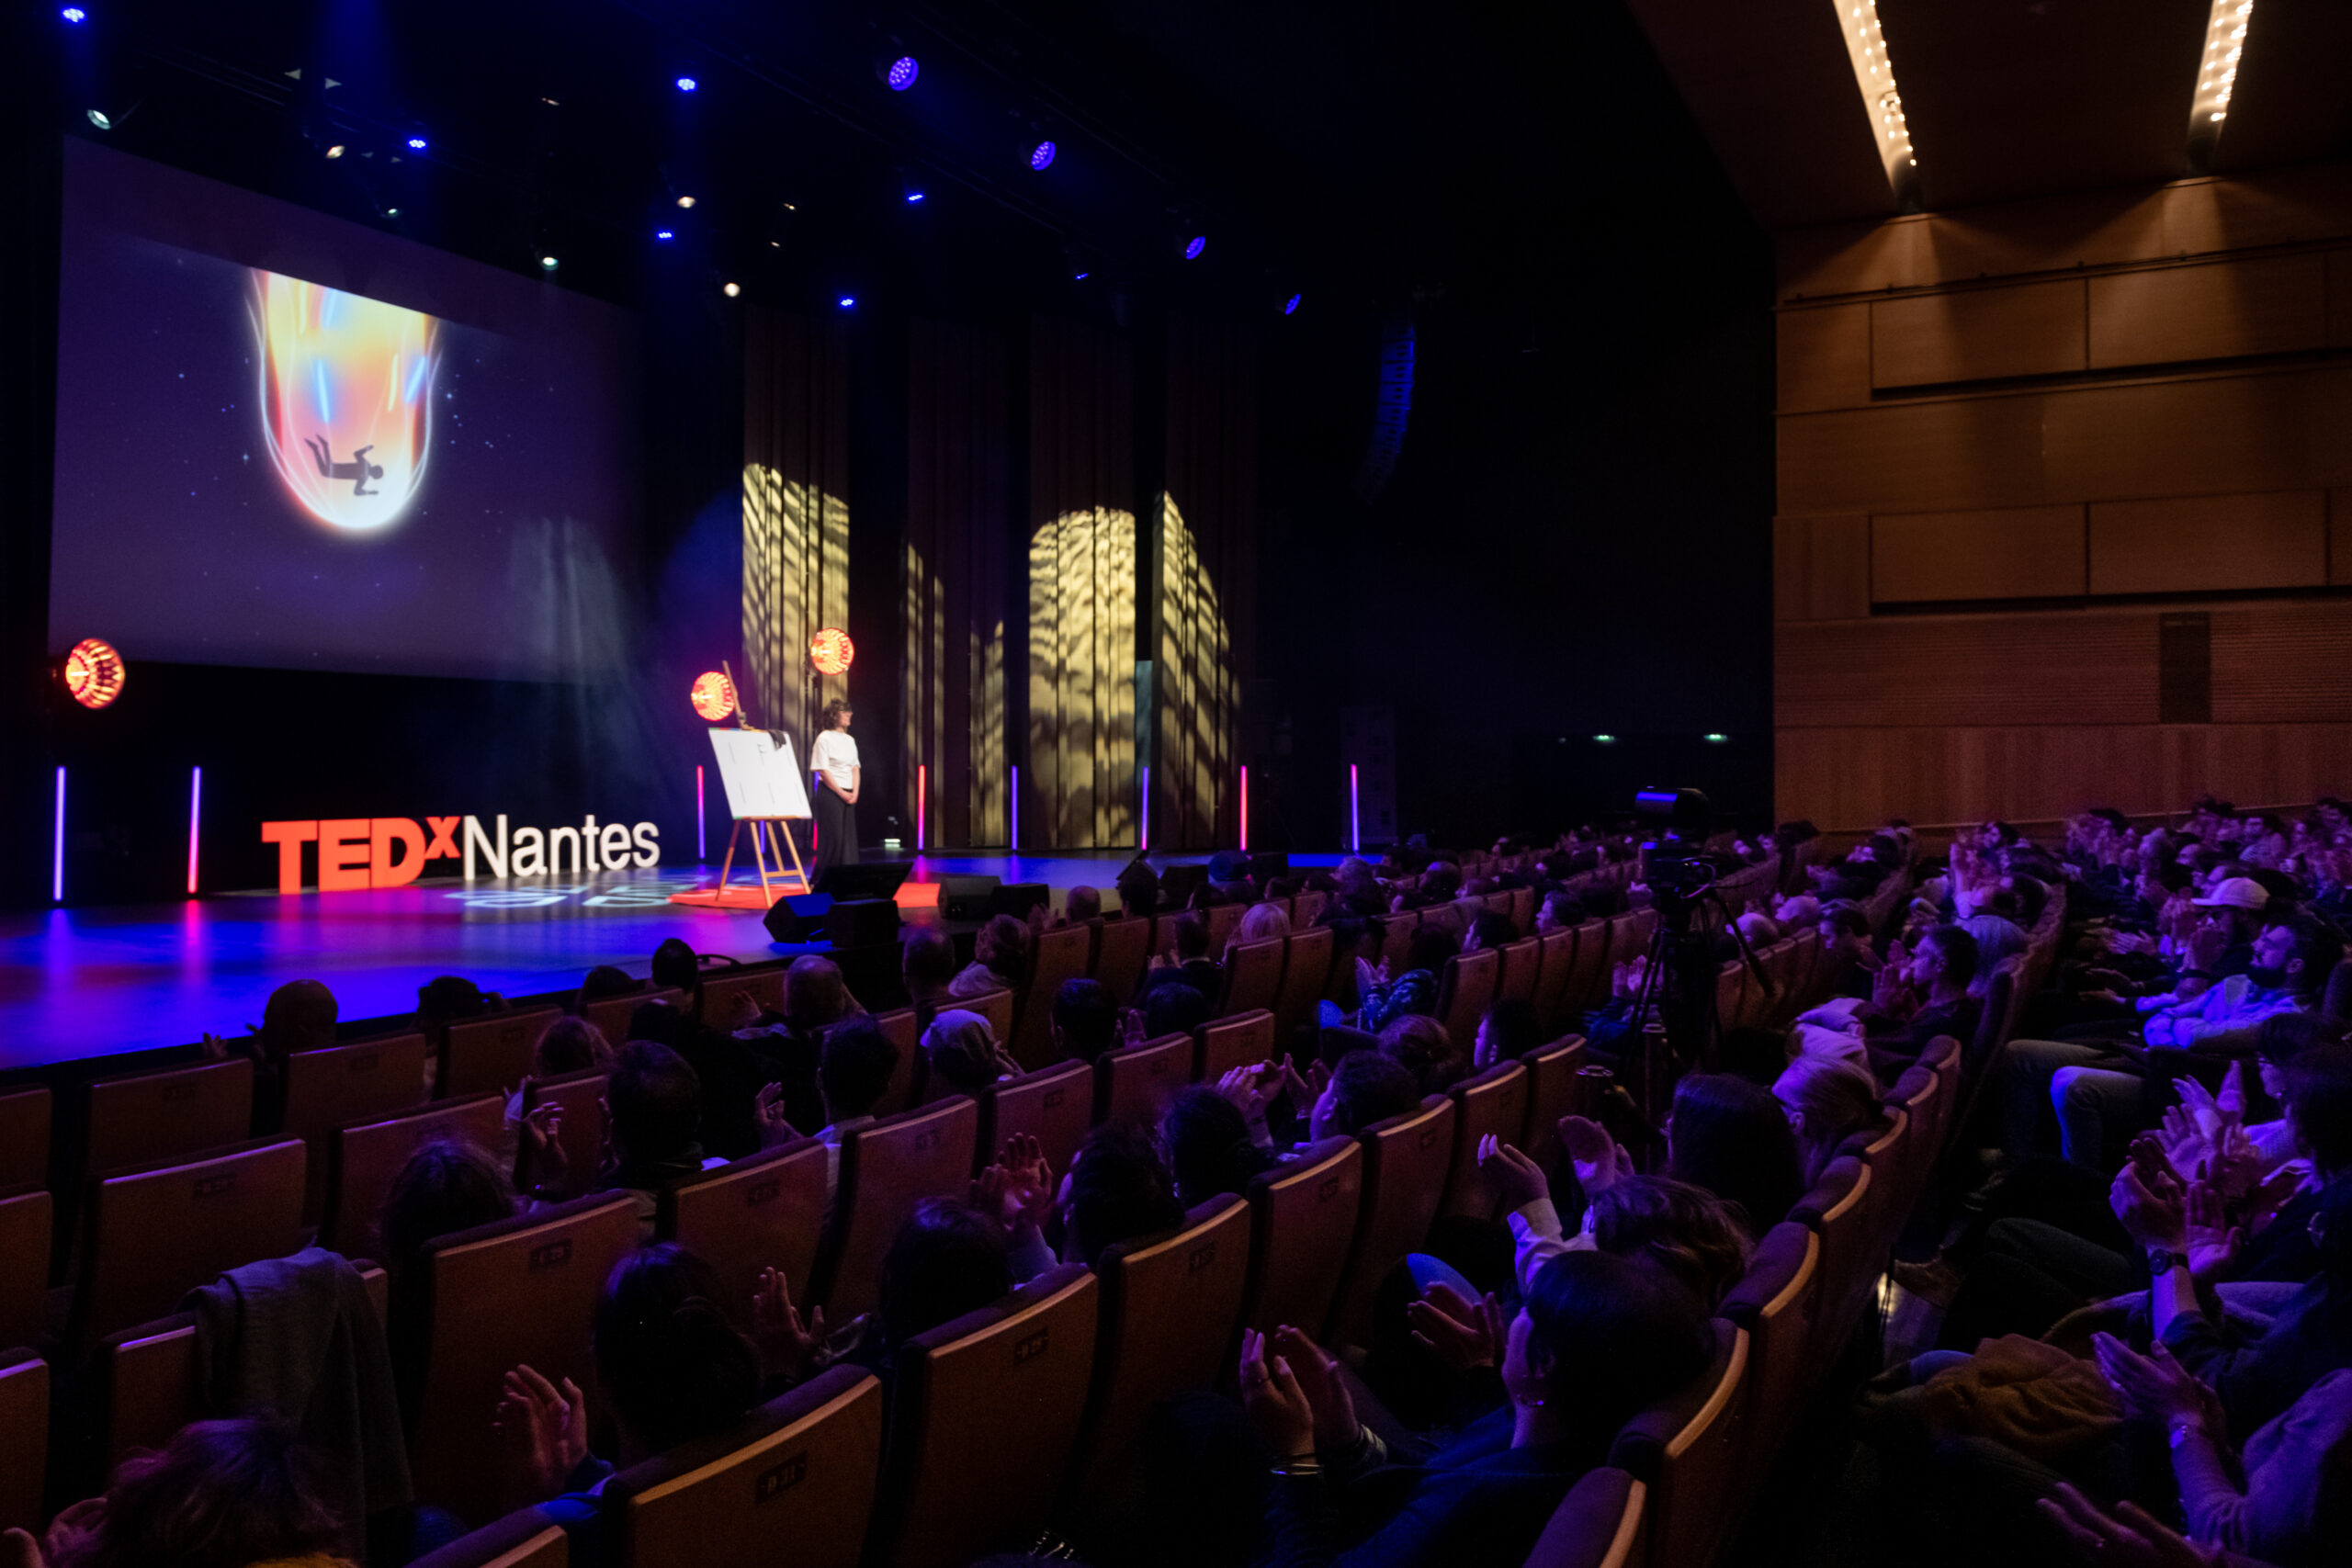 TEDxNantes